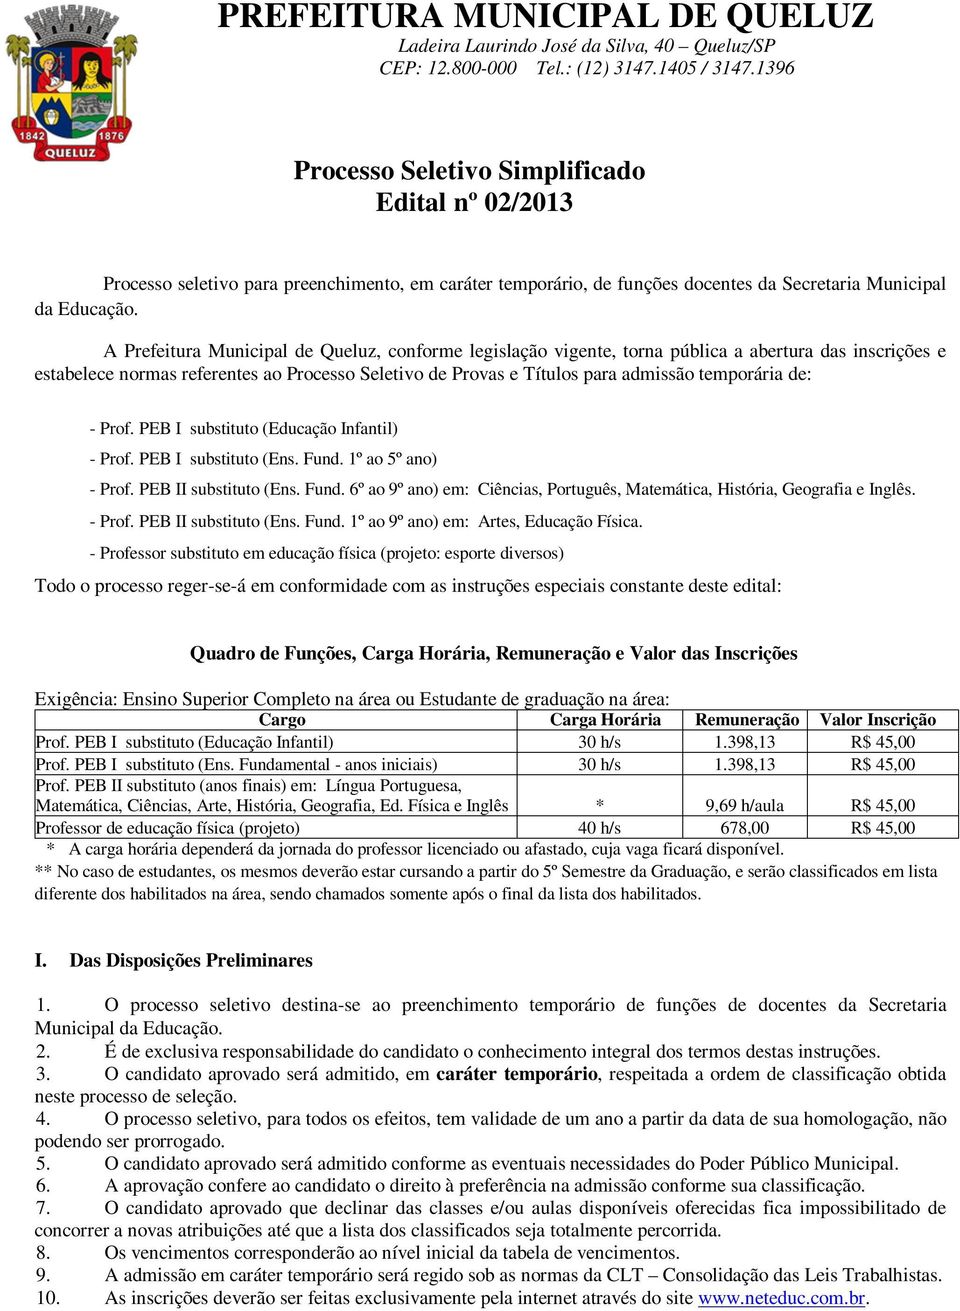 A Prefeitura Municipal de Queluz, conforme legislação vigente, torna pública a abertura das inscrições e estabelece normas referentes ao Processo Seletivo de Provas e Títulos para admissão temporária